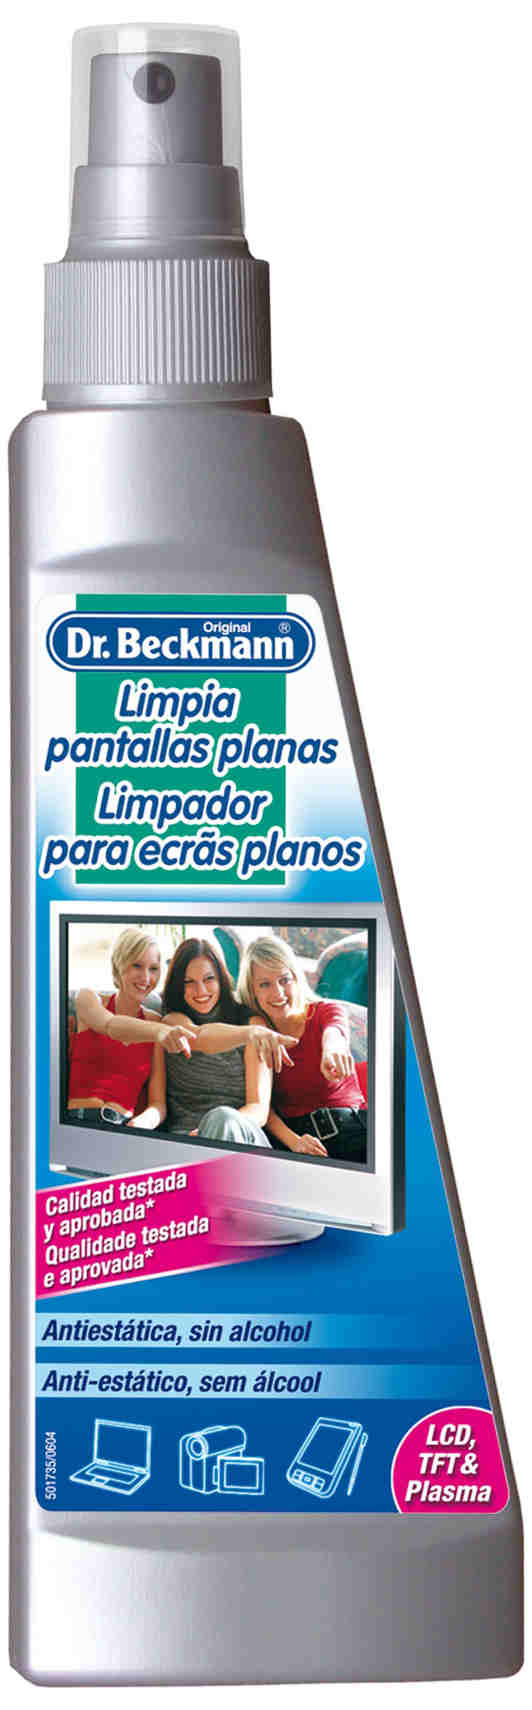 Foto Dr. Beckmann Limpia Pantallas Planas foto 574208